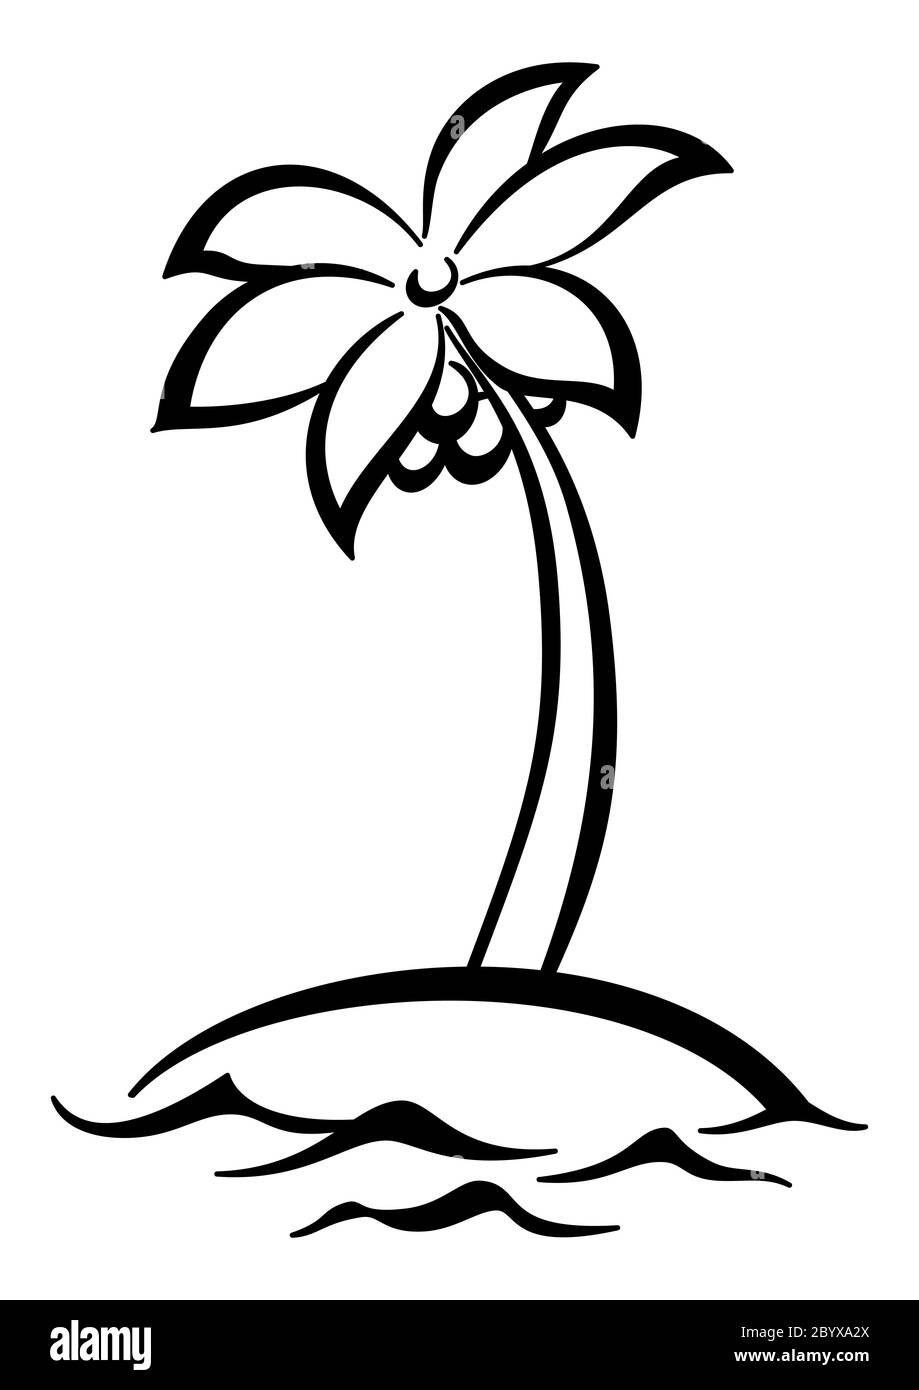 Île tropicale avec des silhouettes de palmiers Banque D'Images